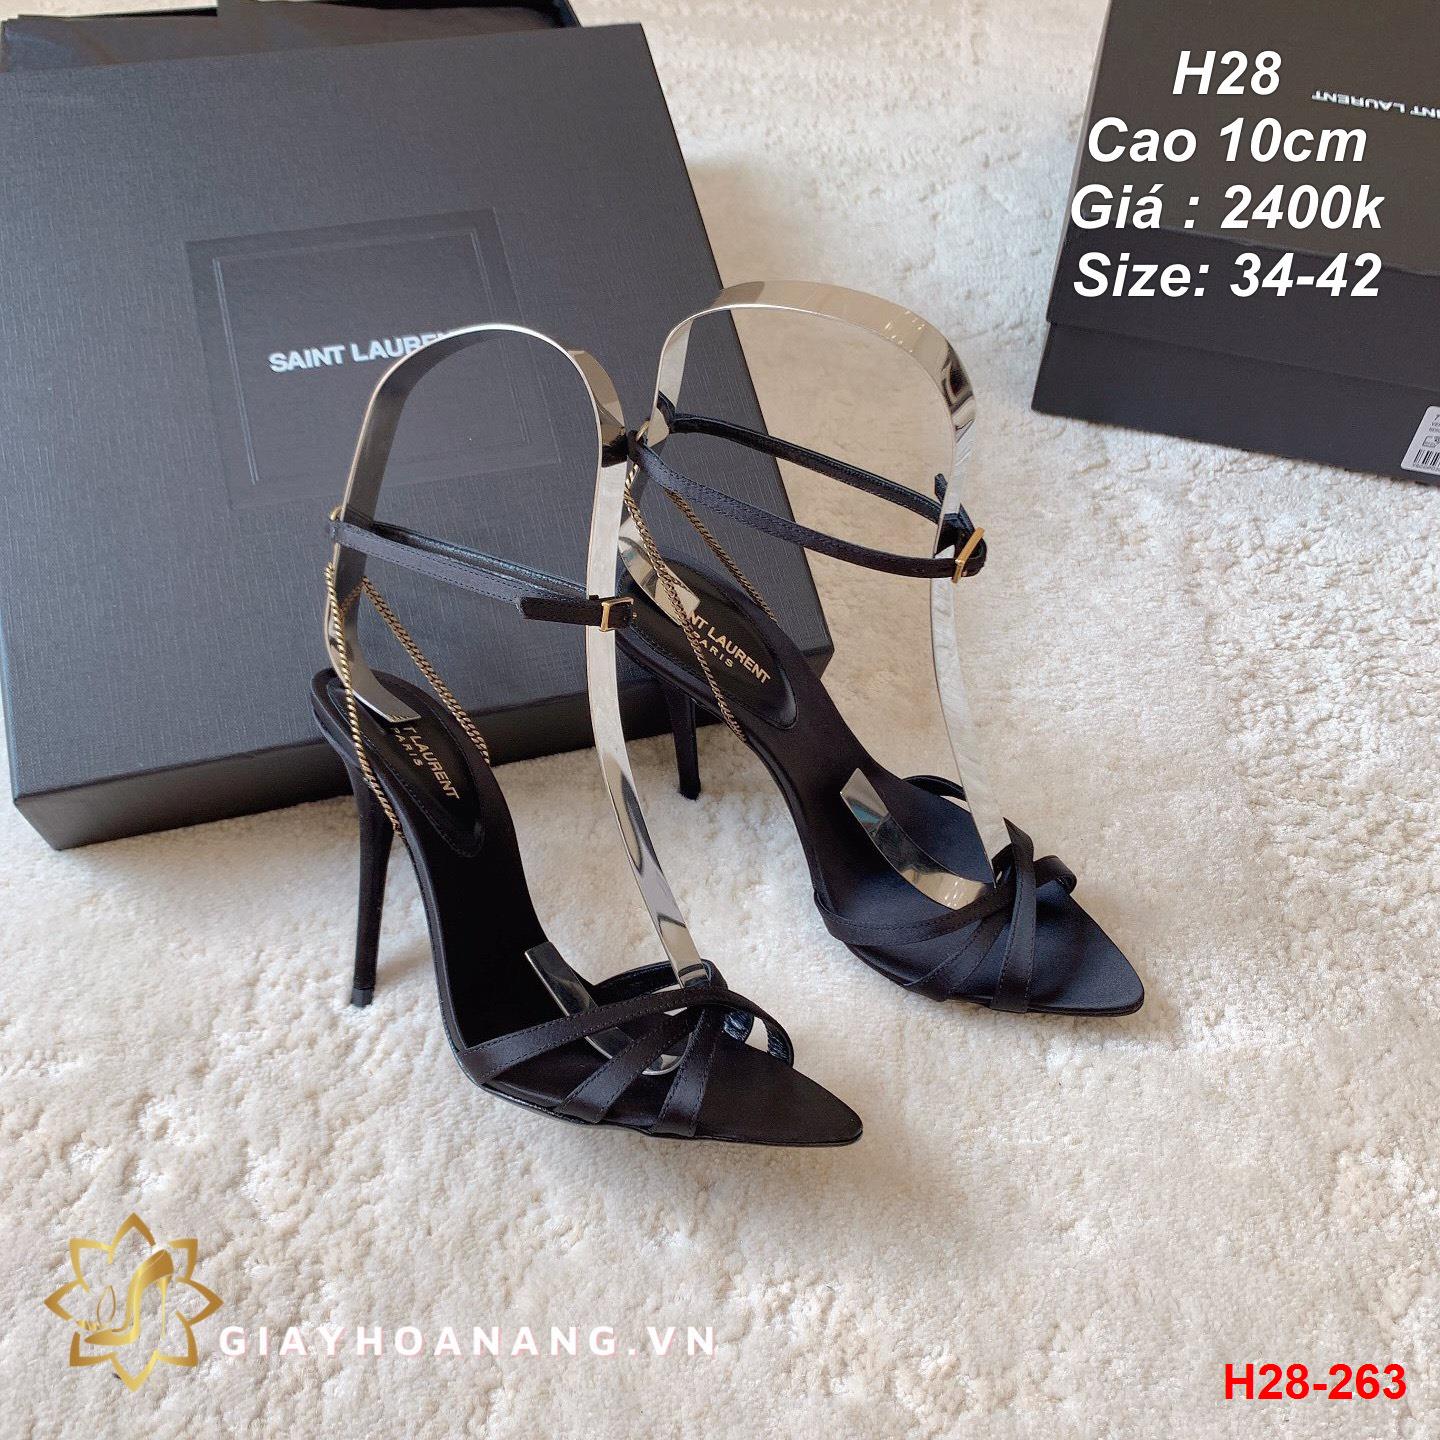 H28-263 Saint Laurent sandal cao 10cm siêu cấp